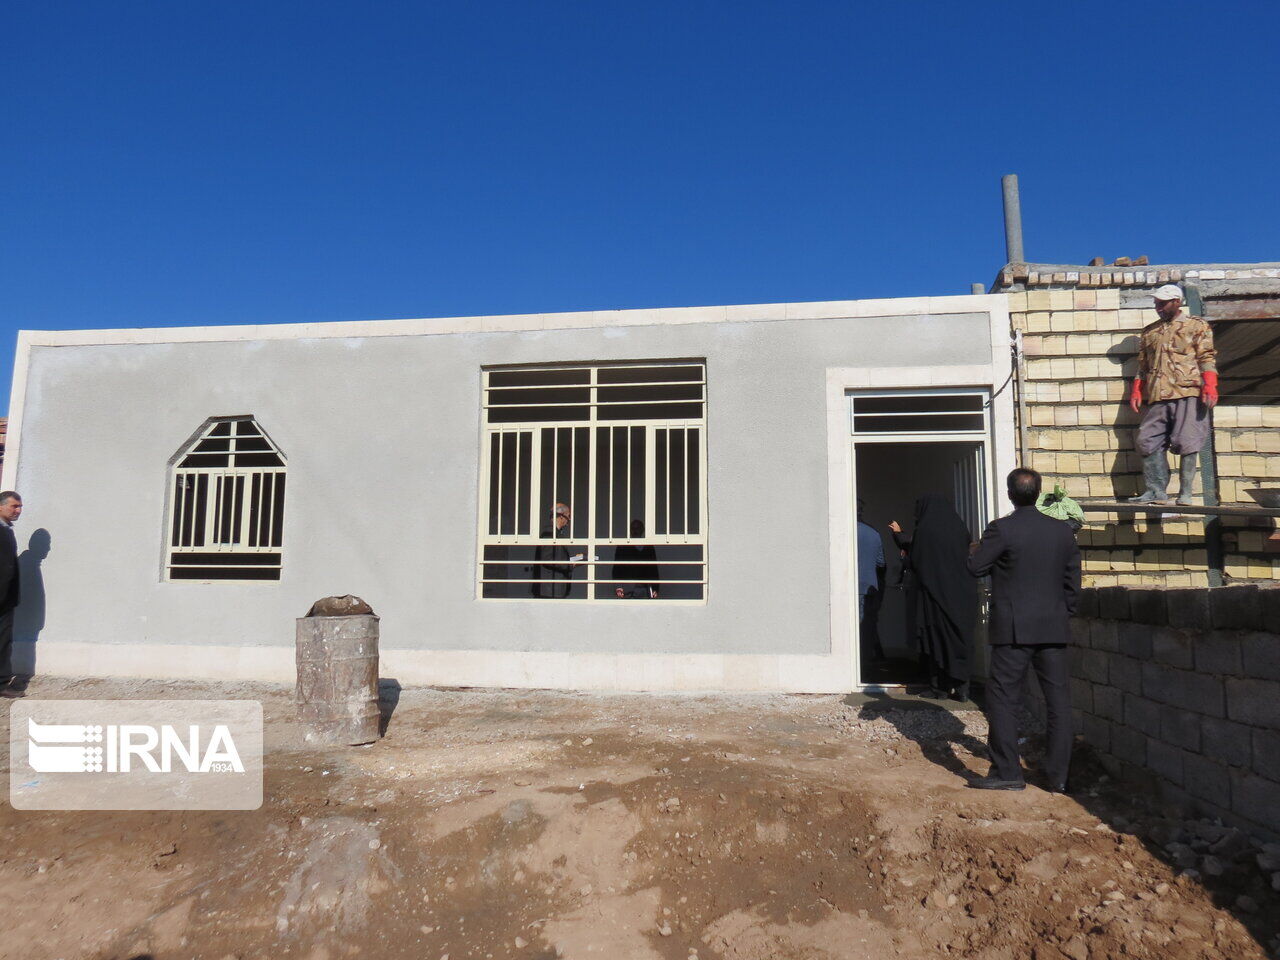 ۸۰ واحد مسکونی ایتام روستایی خوزستان با مشارکت ۲ موسسه خیریه از تهران و خرمشهر و کمیته امداد استان با اعتباری بالغ بر ۵۱ میلیارد ریال به خانواده های تحت پوشش تحویل داده شد.